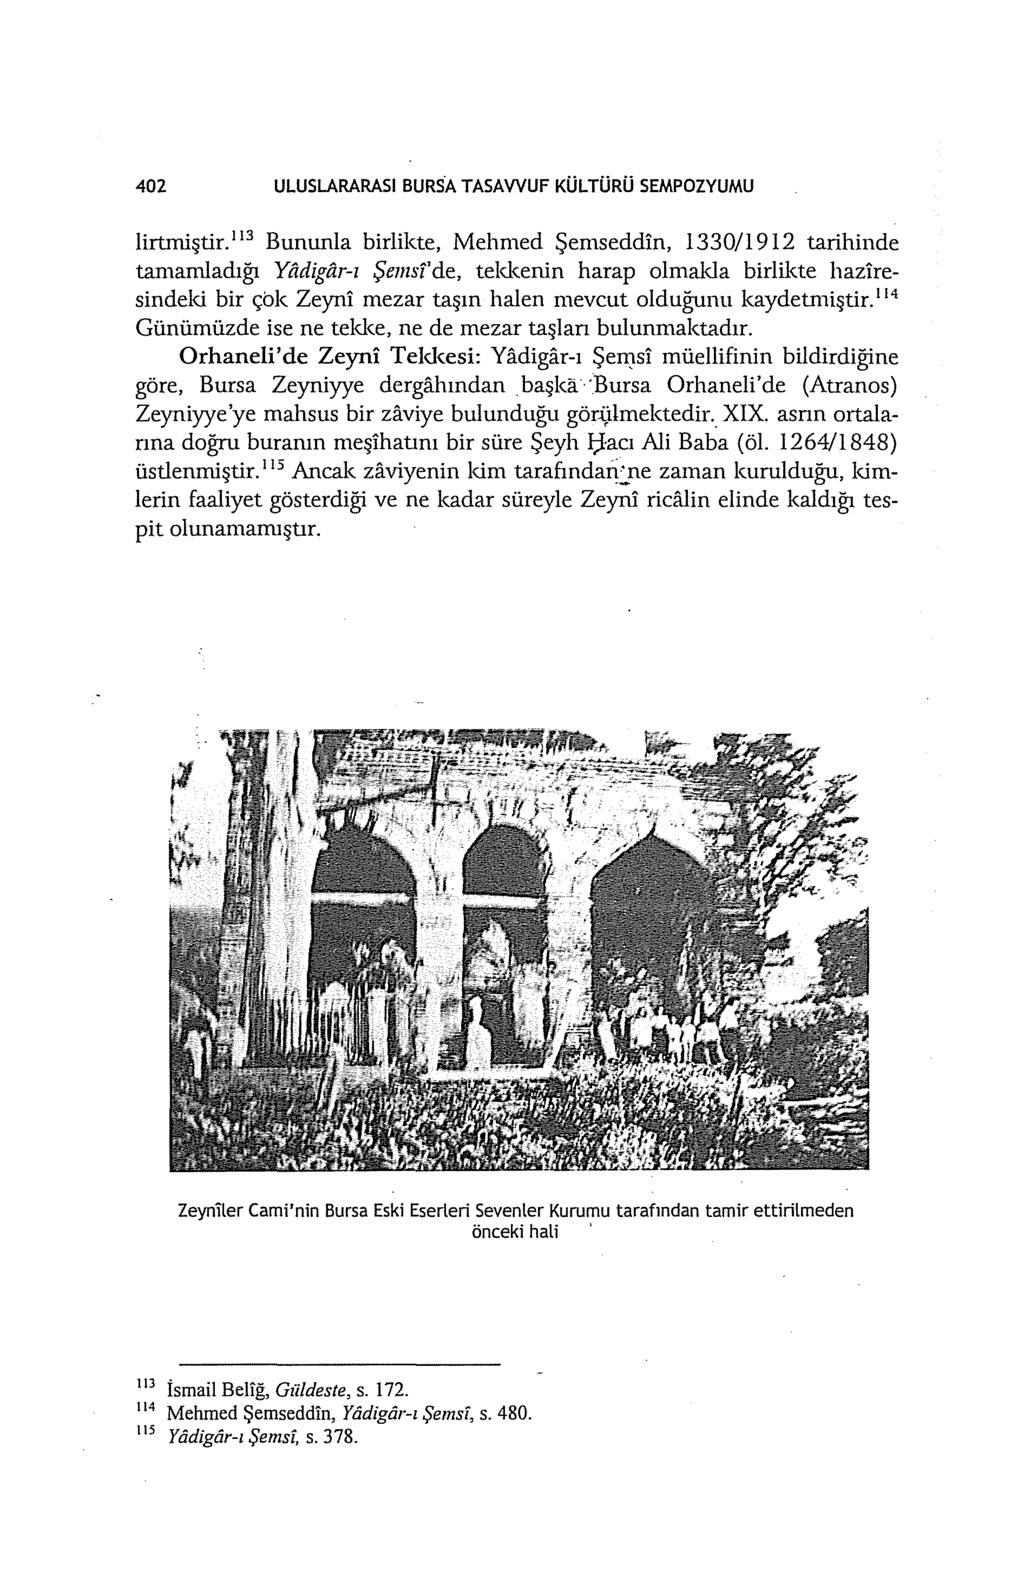 402 ULUSLARARASI BURSA TASAWUF KÜLTÜRÜ SEMPOZYUMU lirtmiştir.ll3 Bununla birlikte, Mehmed Şemseddin, 1330/1912 tarihinde tamamladığı Yadigfi.